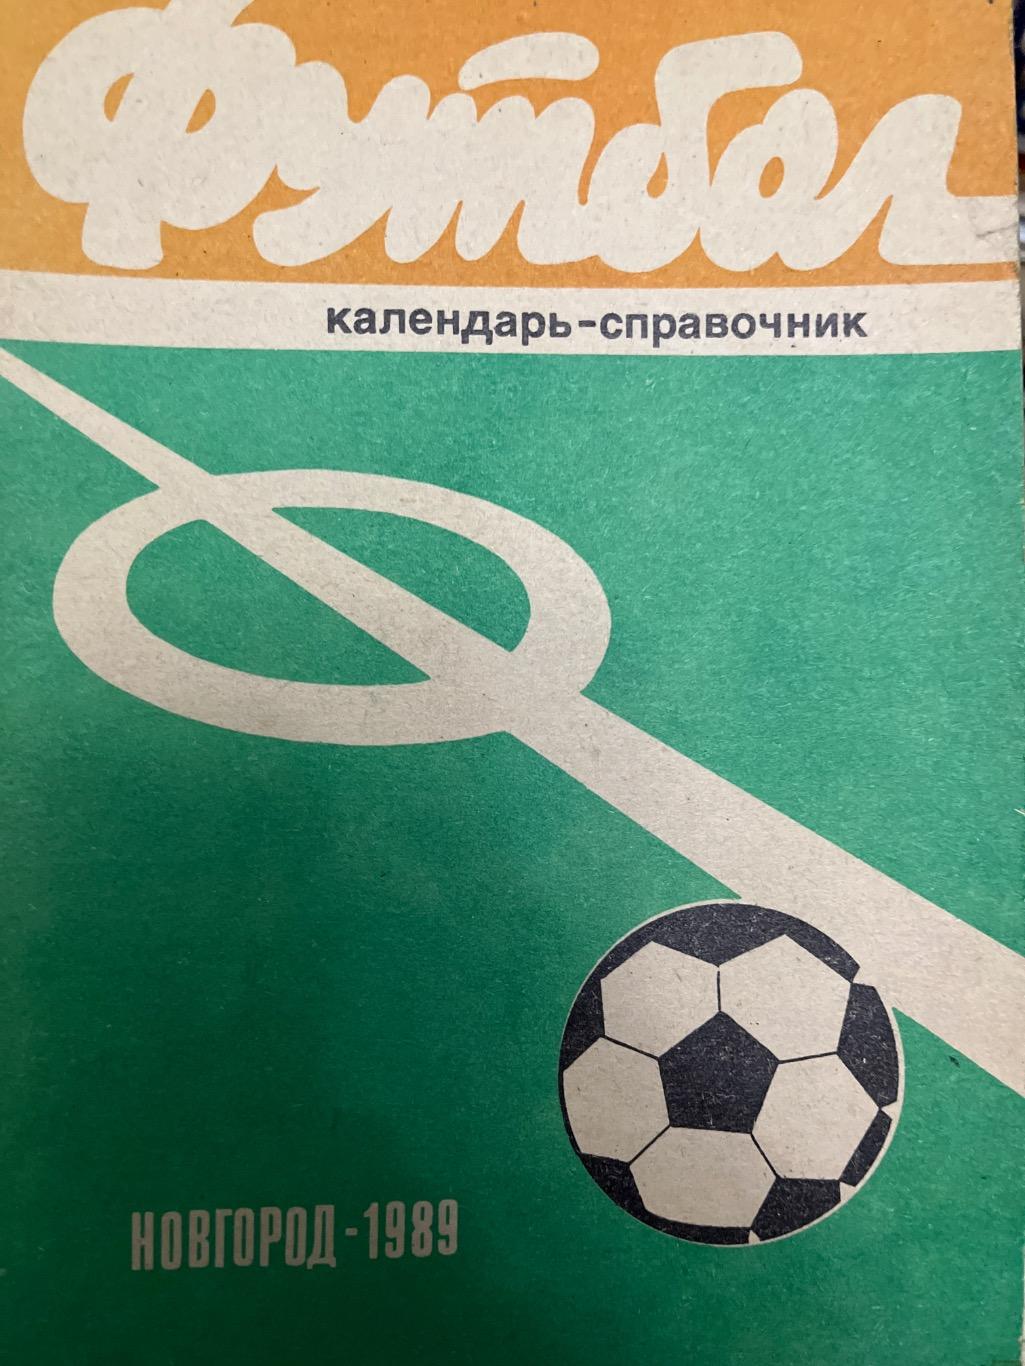 Новгород 1989 календарь-справочник